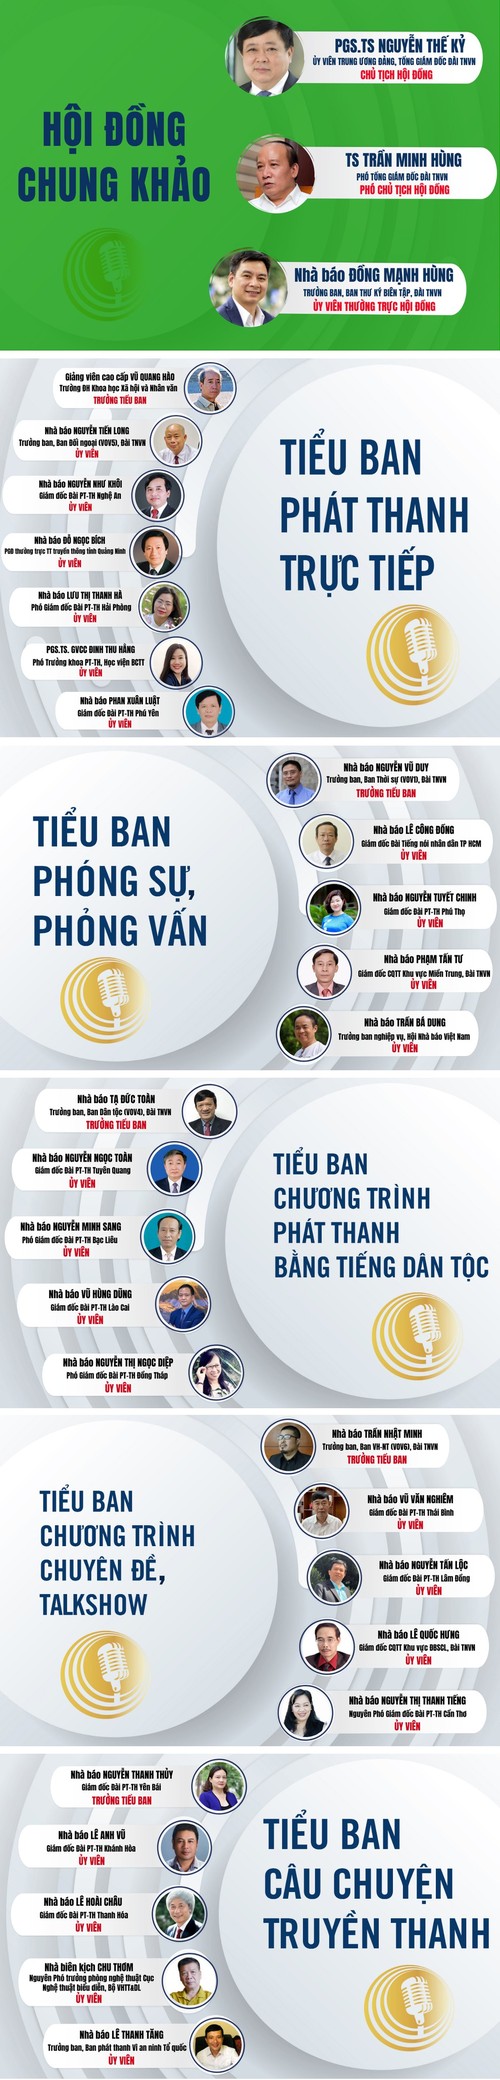 Infographic: Các thành viên Hội đồng chung khảo LHPT toàn quốc lần thứ XIV - ảnh 1